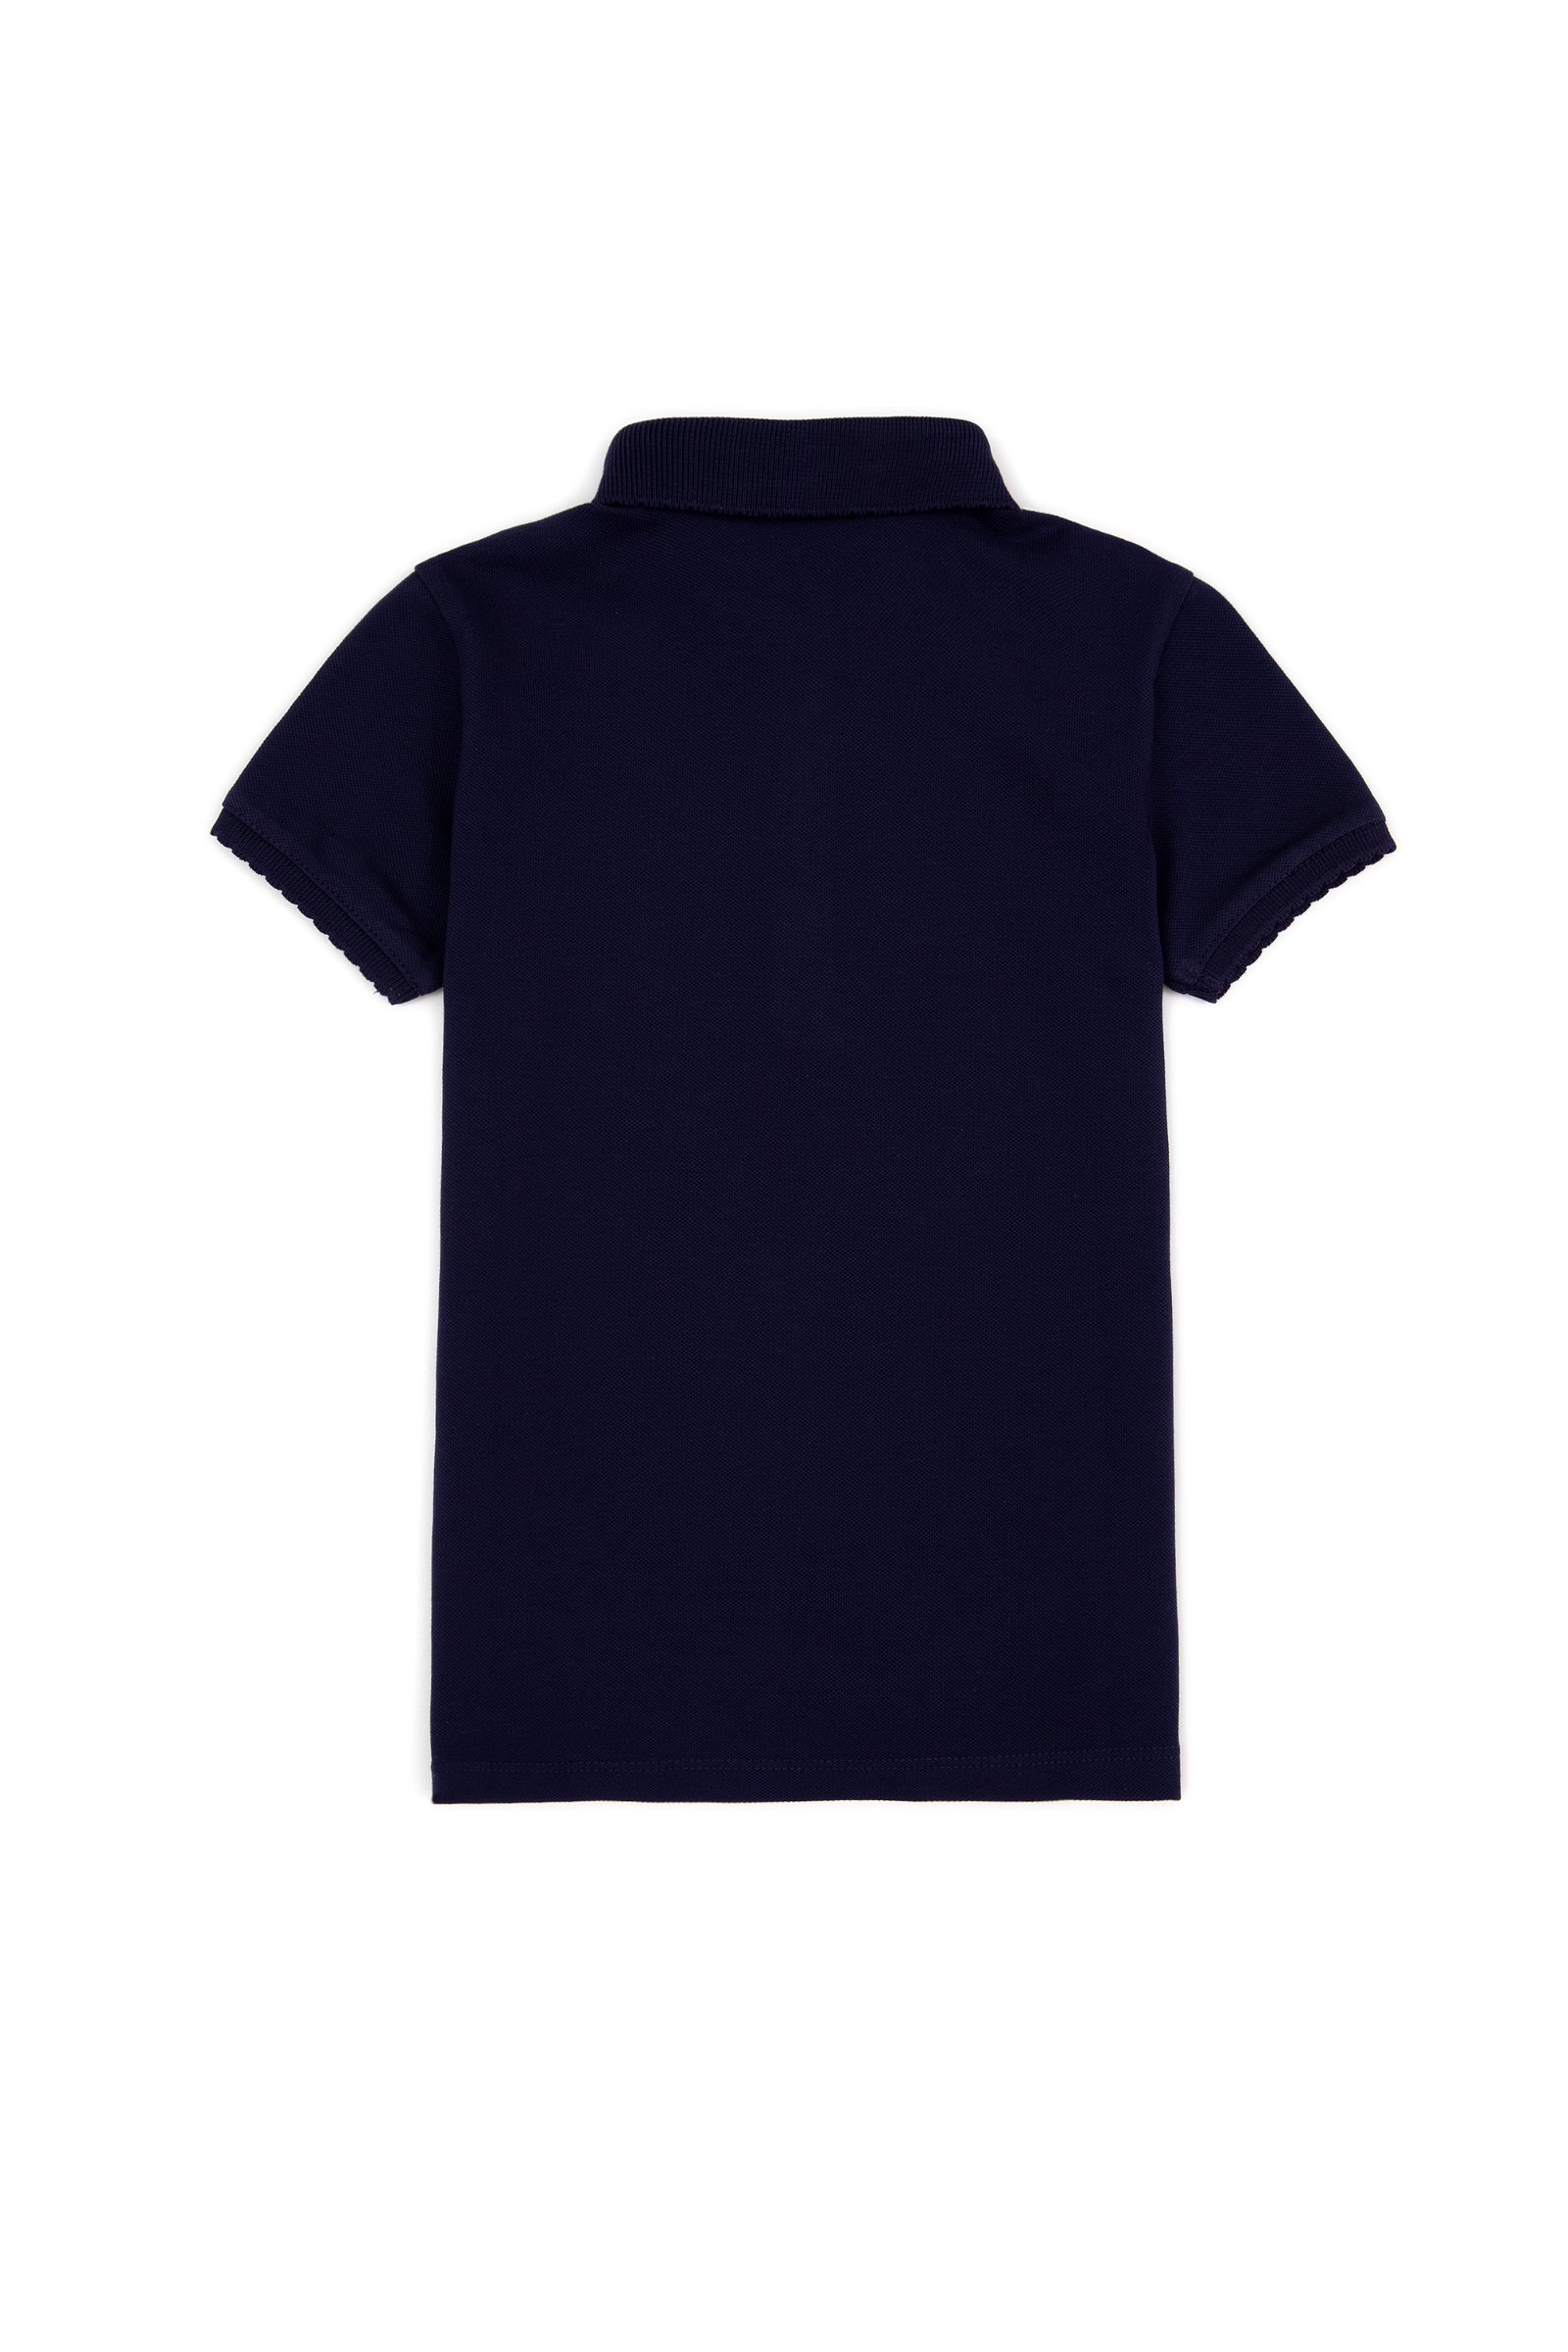 تی شرت  لاجورد  استاندارد فیت  دخترانه یو اس پولو